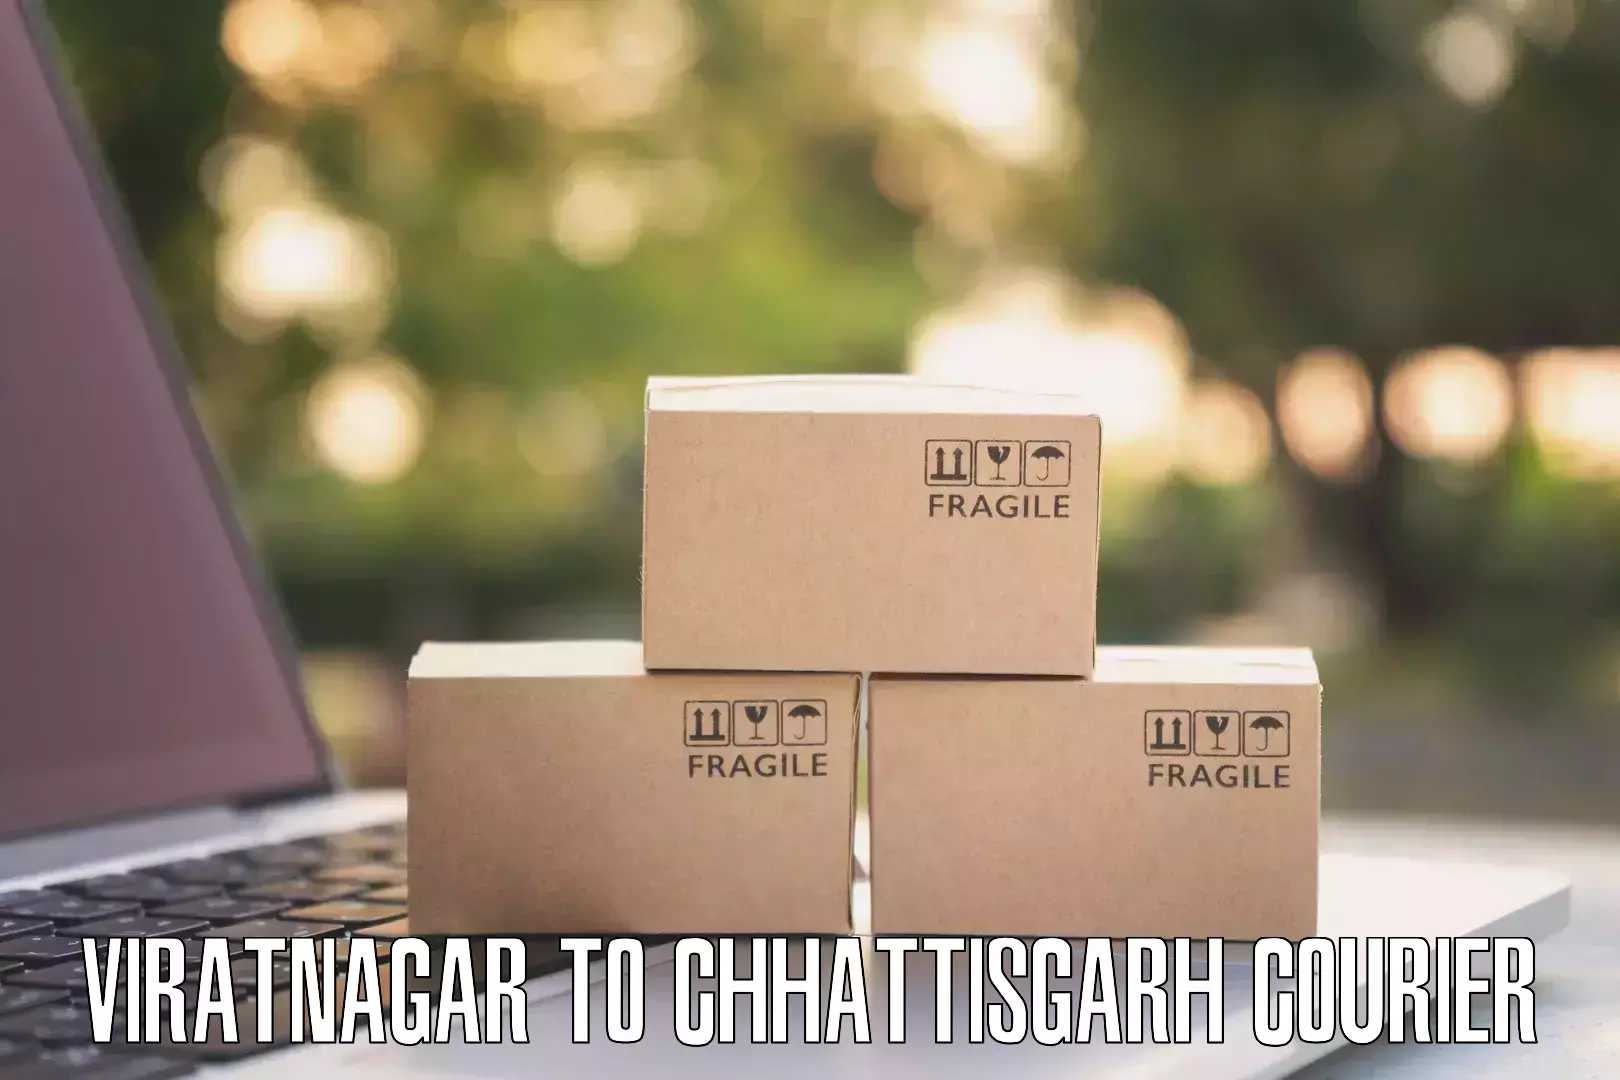 Secure freight services Viratnagar to Bijapur Chhattisgarh